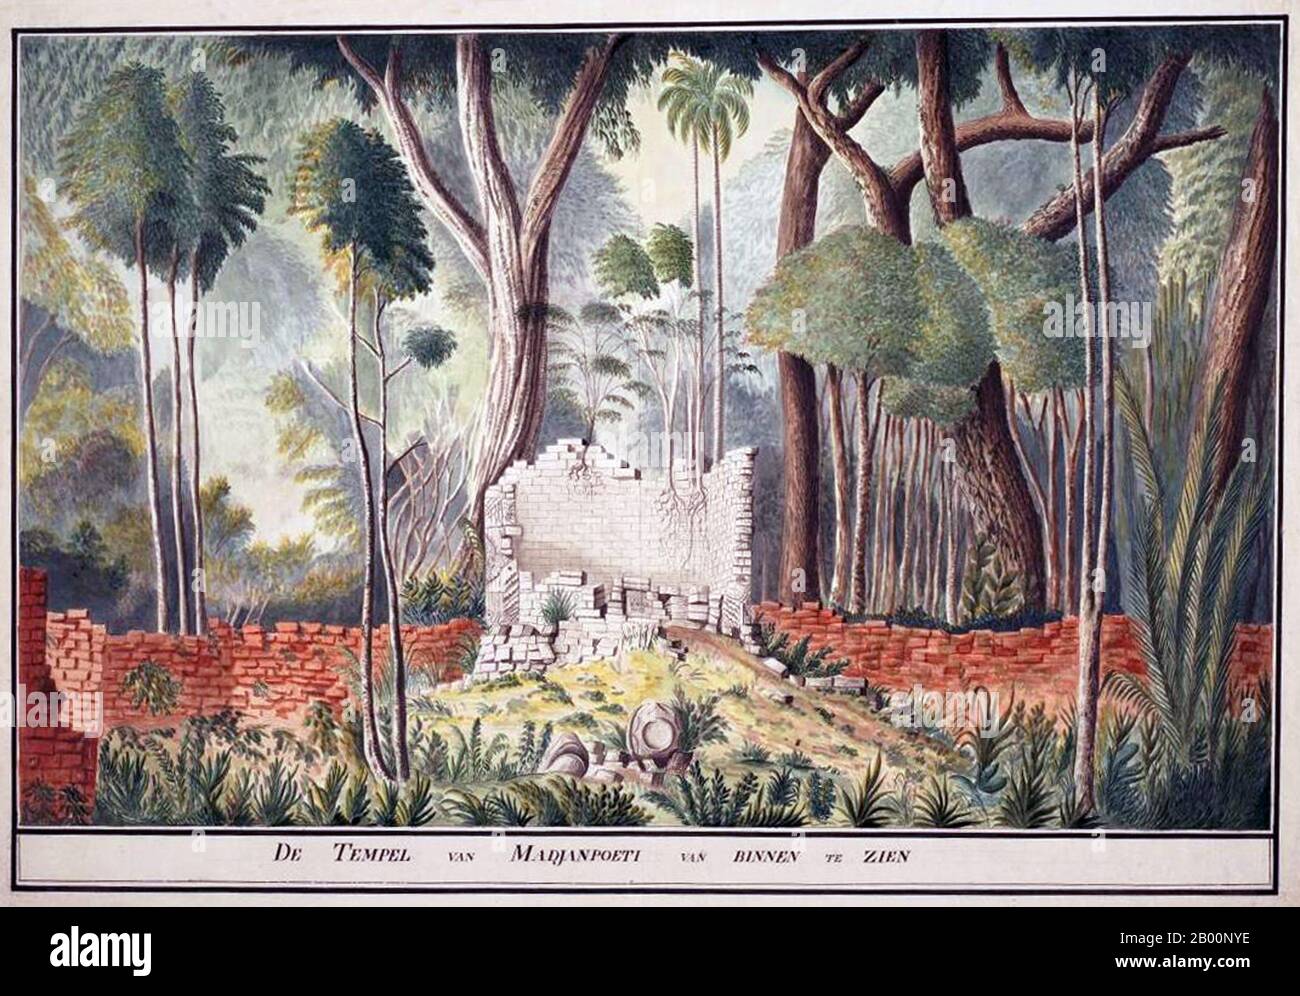 Indonésie : Madura, intérieur du Temple de Madjanpoeti. Peinture aquarelle par un artiste inconnu, fin du XVIIIe siècle. A partir du 7ème siècle ce, le puissant royaume naval de Srivijaya a prospéré en Indonésie en raison du commerce et des influences de l'hindouisme et du bouddhisme qui ont été importés avec lui de Malaya. Entre les 8e et 10e siècles ce, les dynasties bouddhistes agricoles Sailendra et Hindou Mataram ont prospéré et décliné dans l'intérieur de Java, laissant de grands monuments religieux tels que Borobudur de Sailendra et Prambanan de Mataram. Banque D'Images